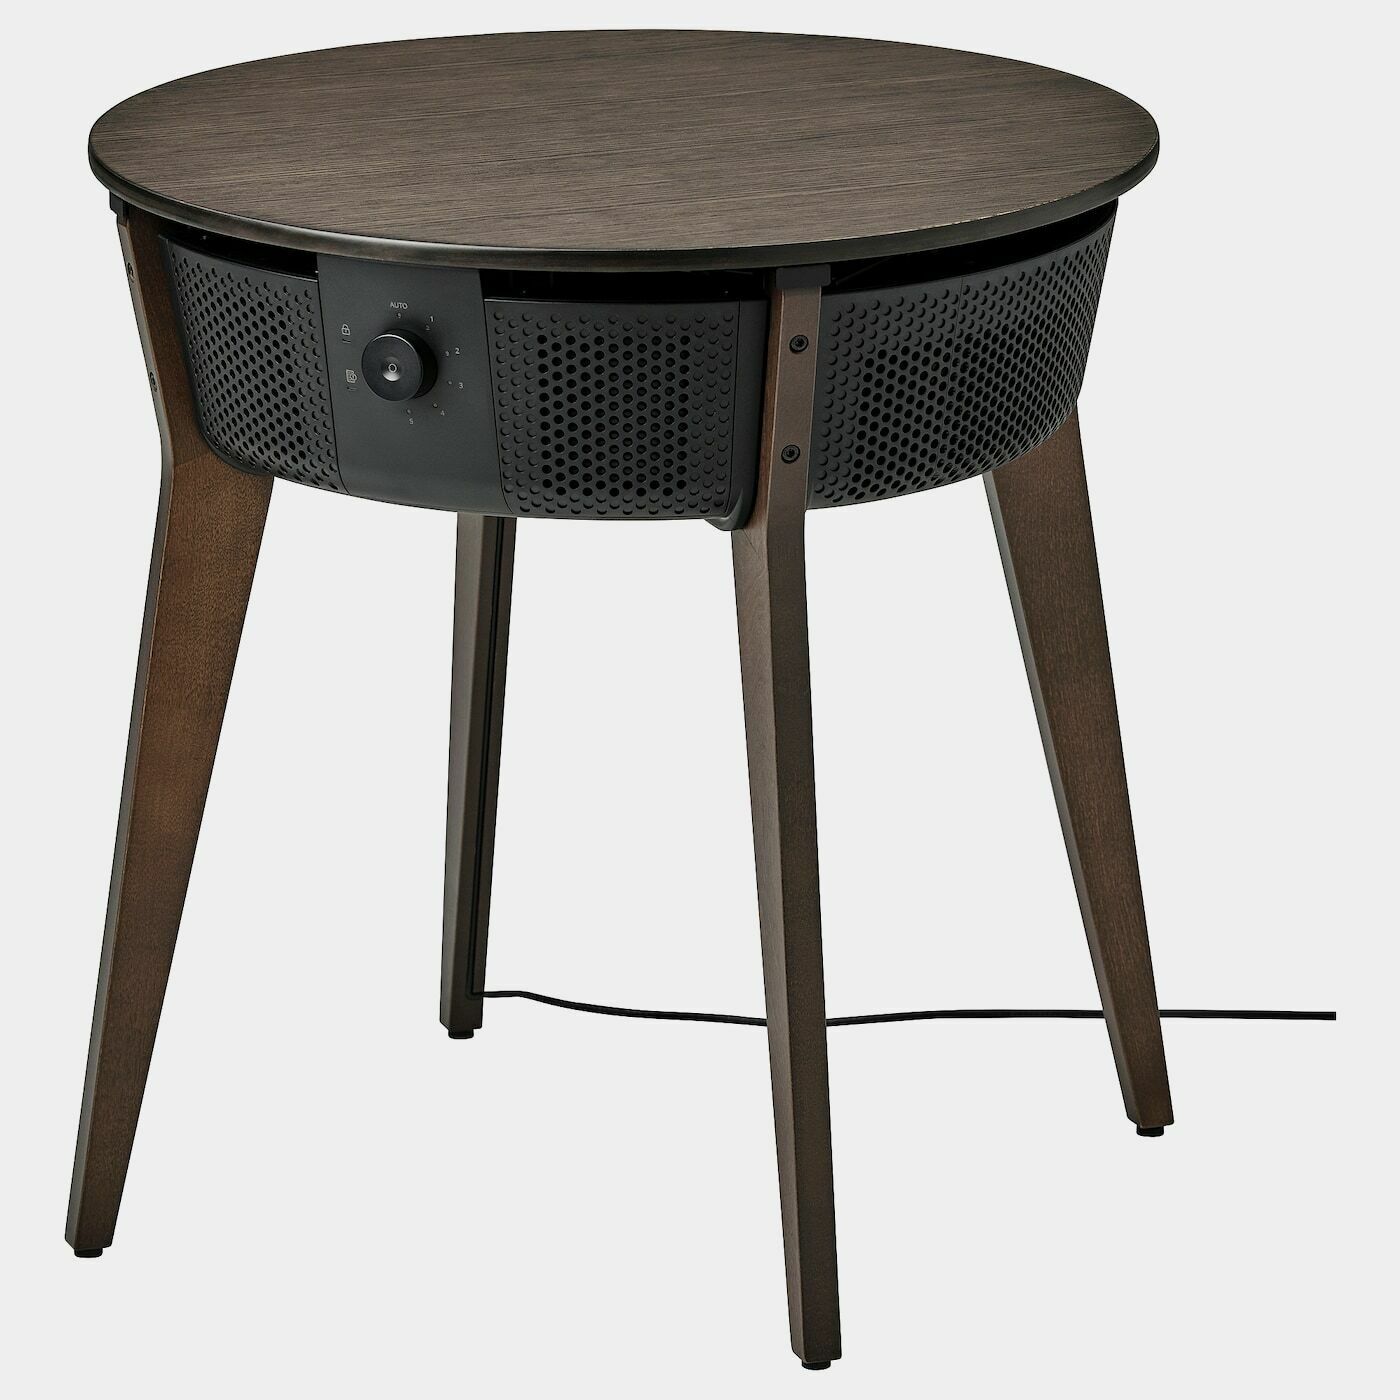 STARKVIND Tisch mit Luftreiniger  -  - Möbel Ideen für dein Zuhause von Home Trends. Möbel Trends von Social Media Influencer für dein Skandi Zuhause.